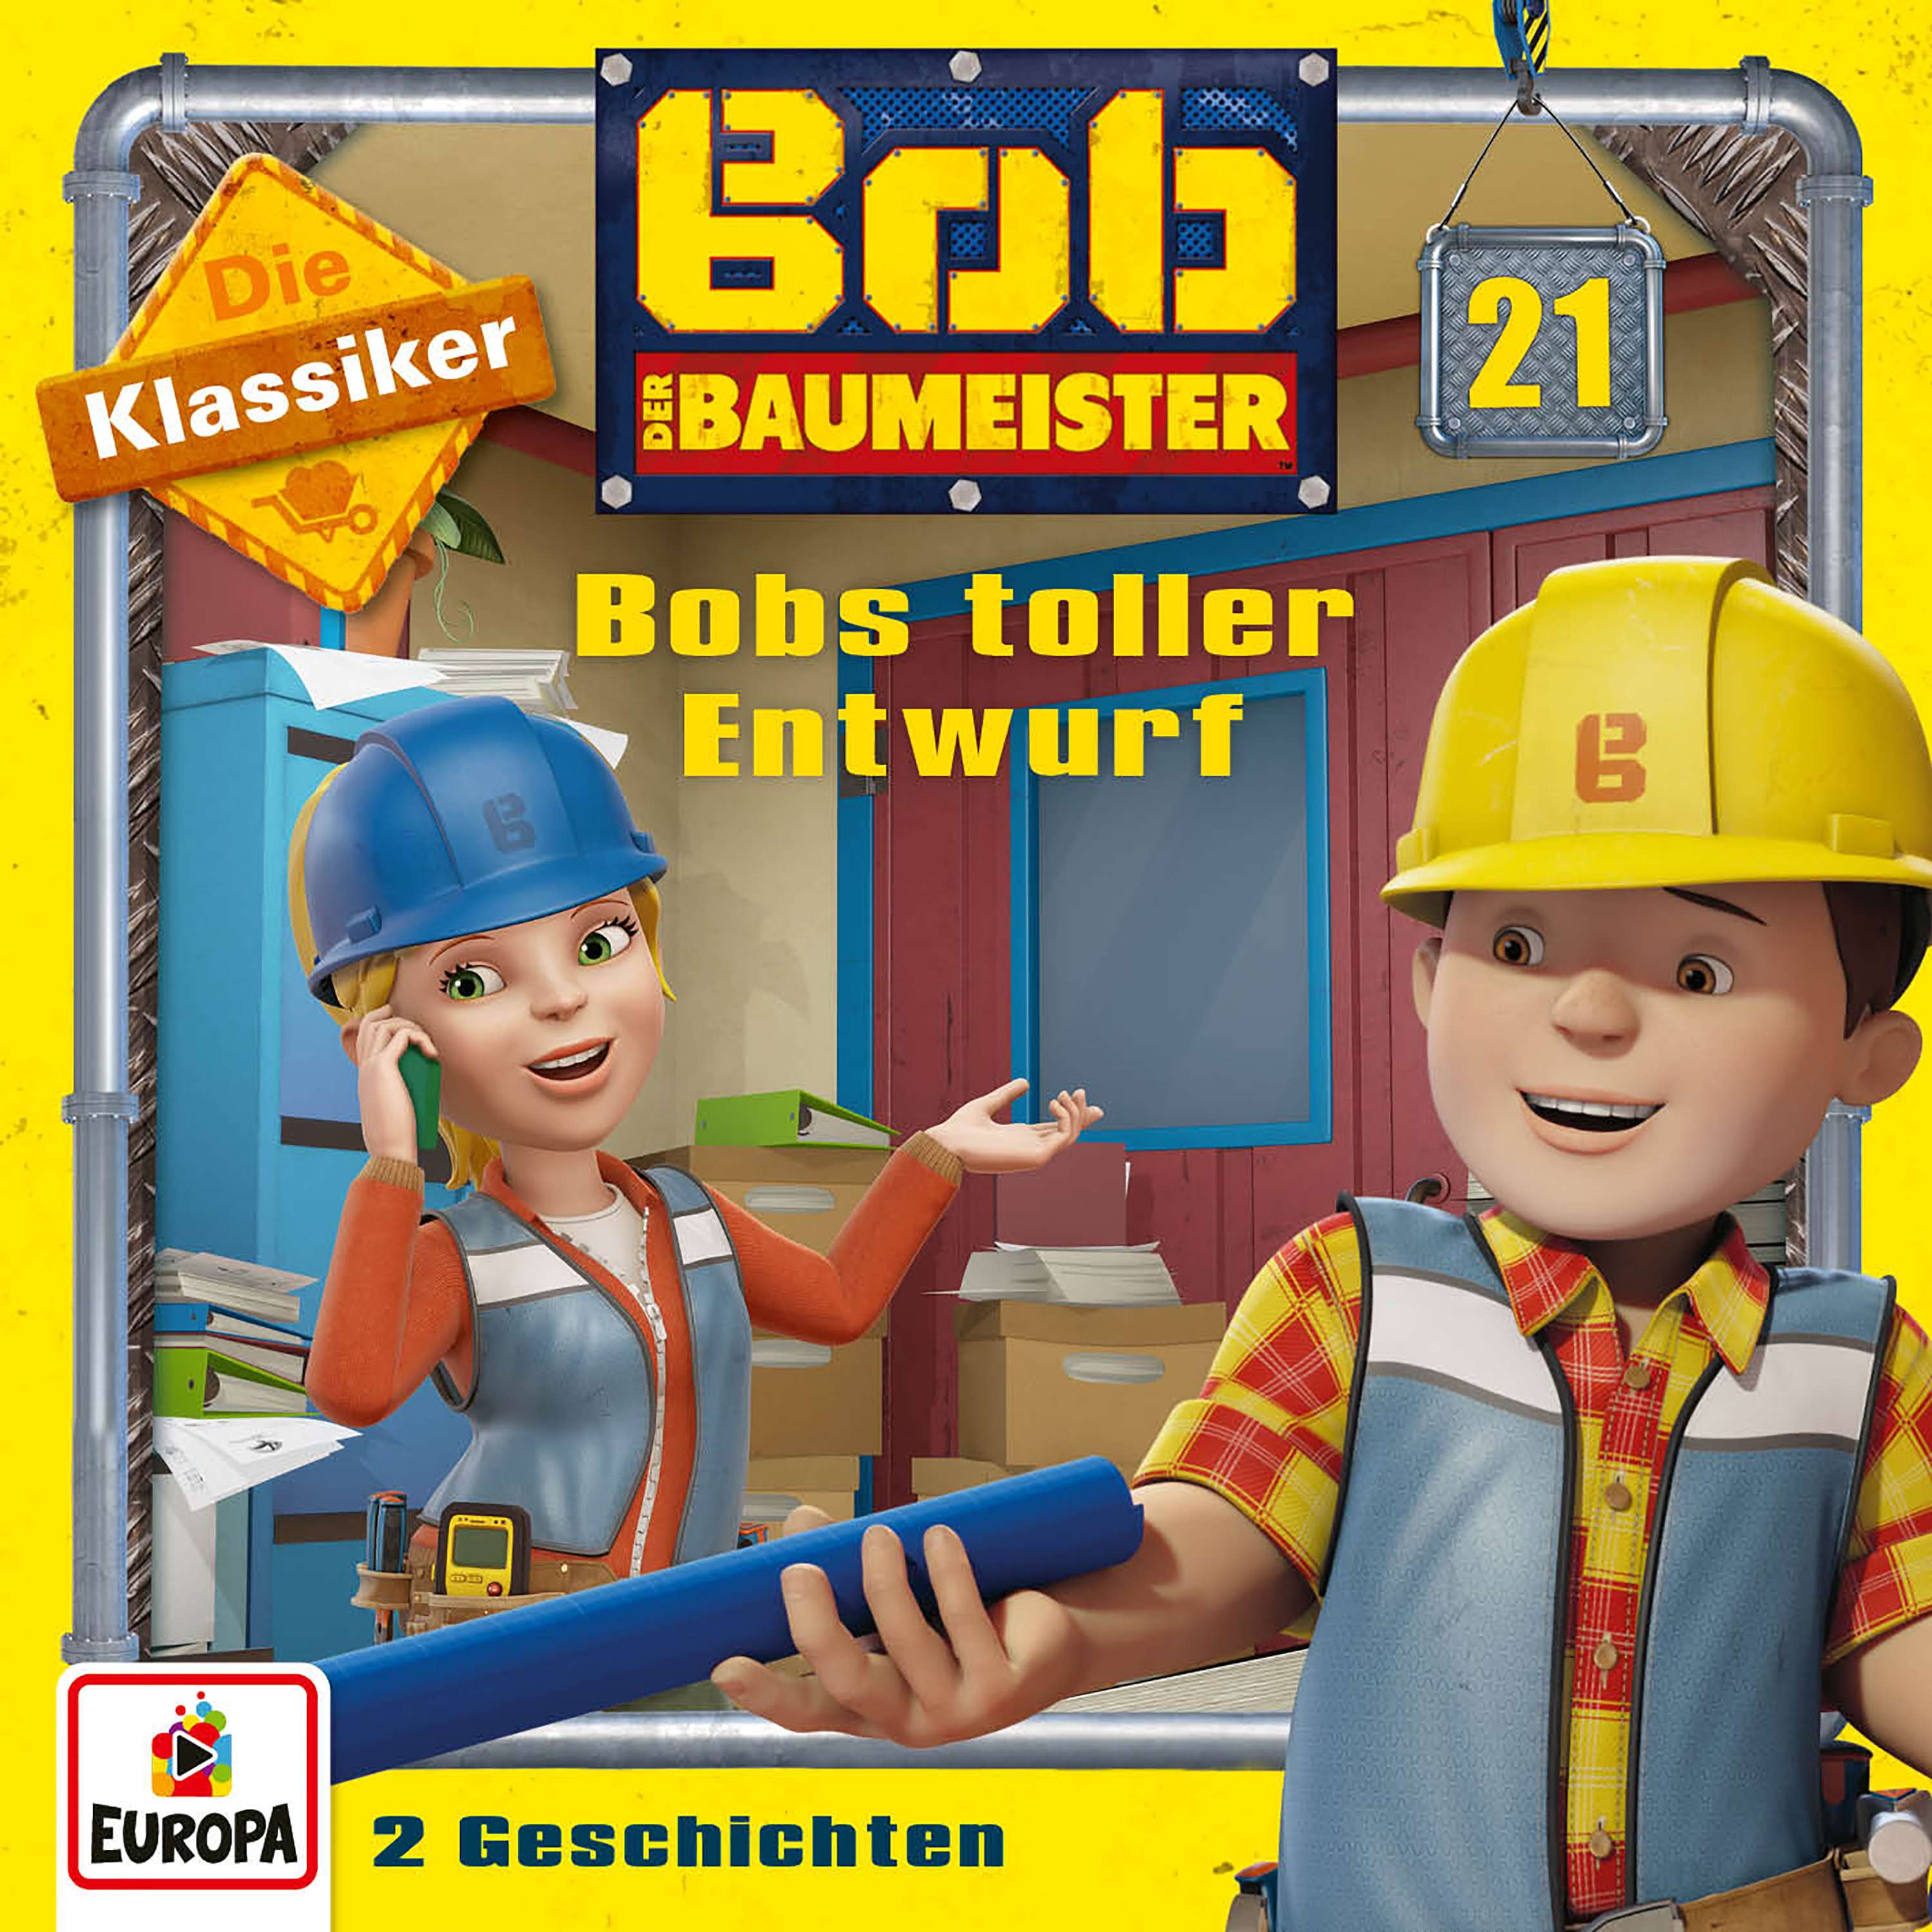 Bob der Baumeister: Bobs toller Entwurf (Die Klassiker)